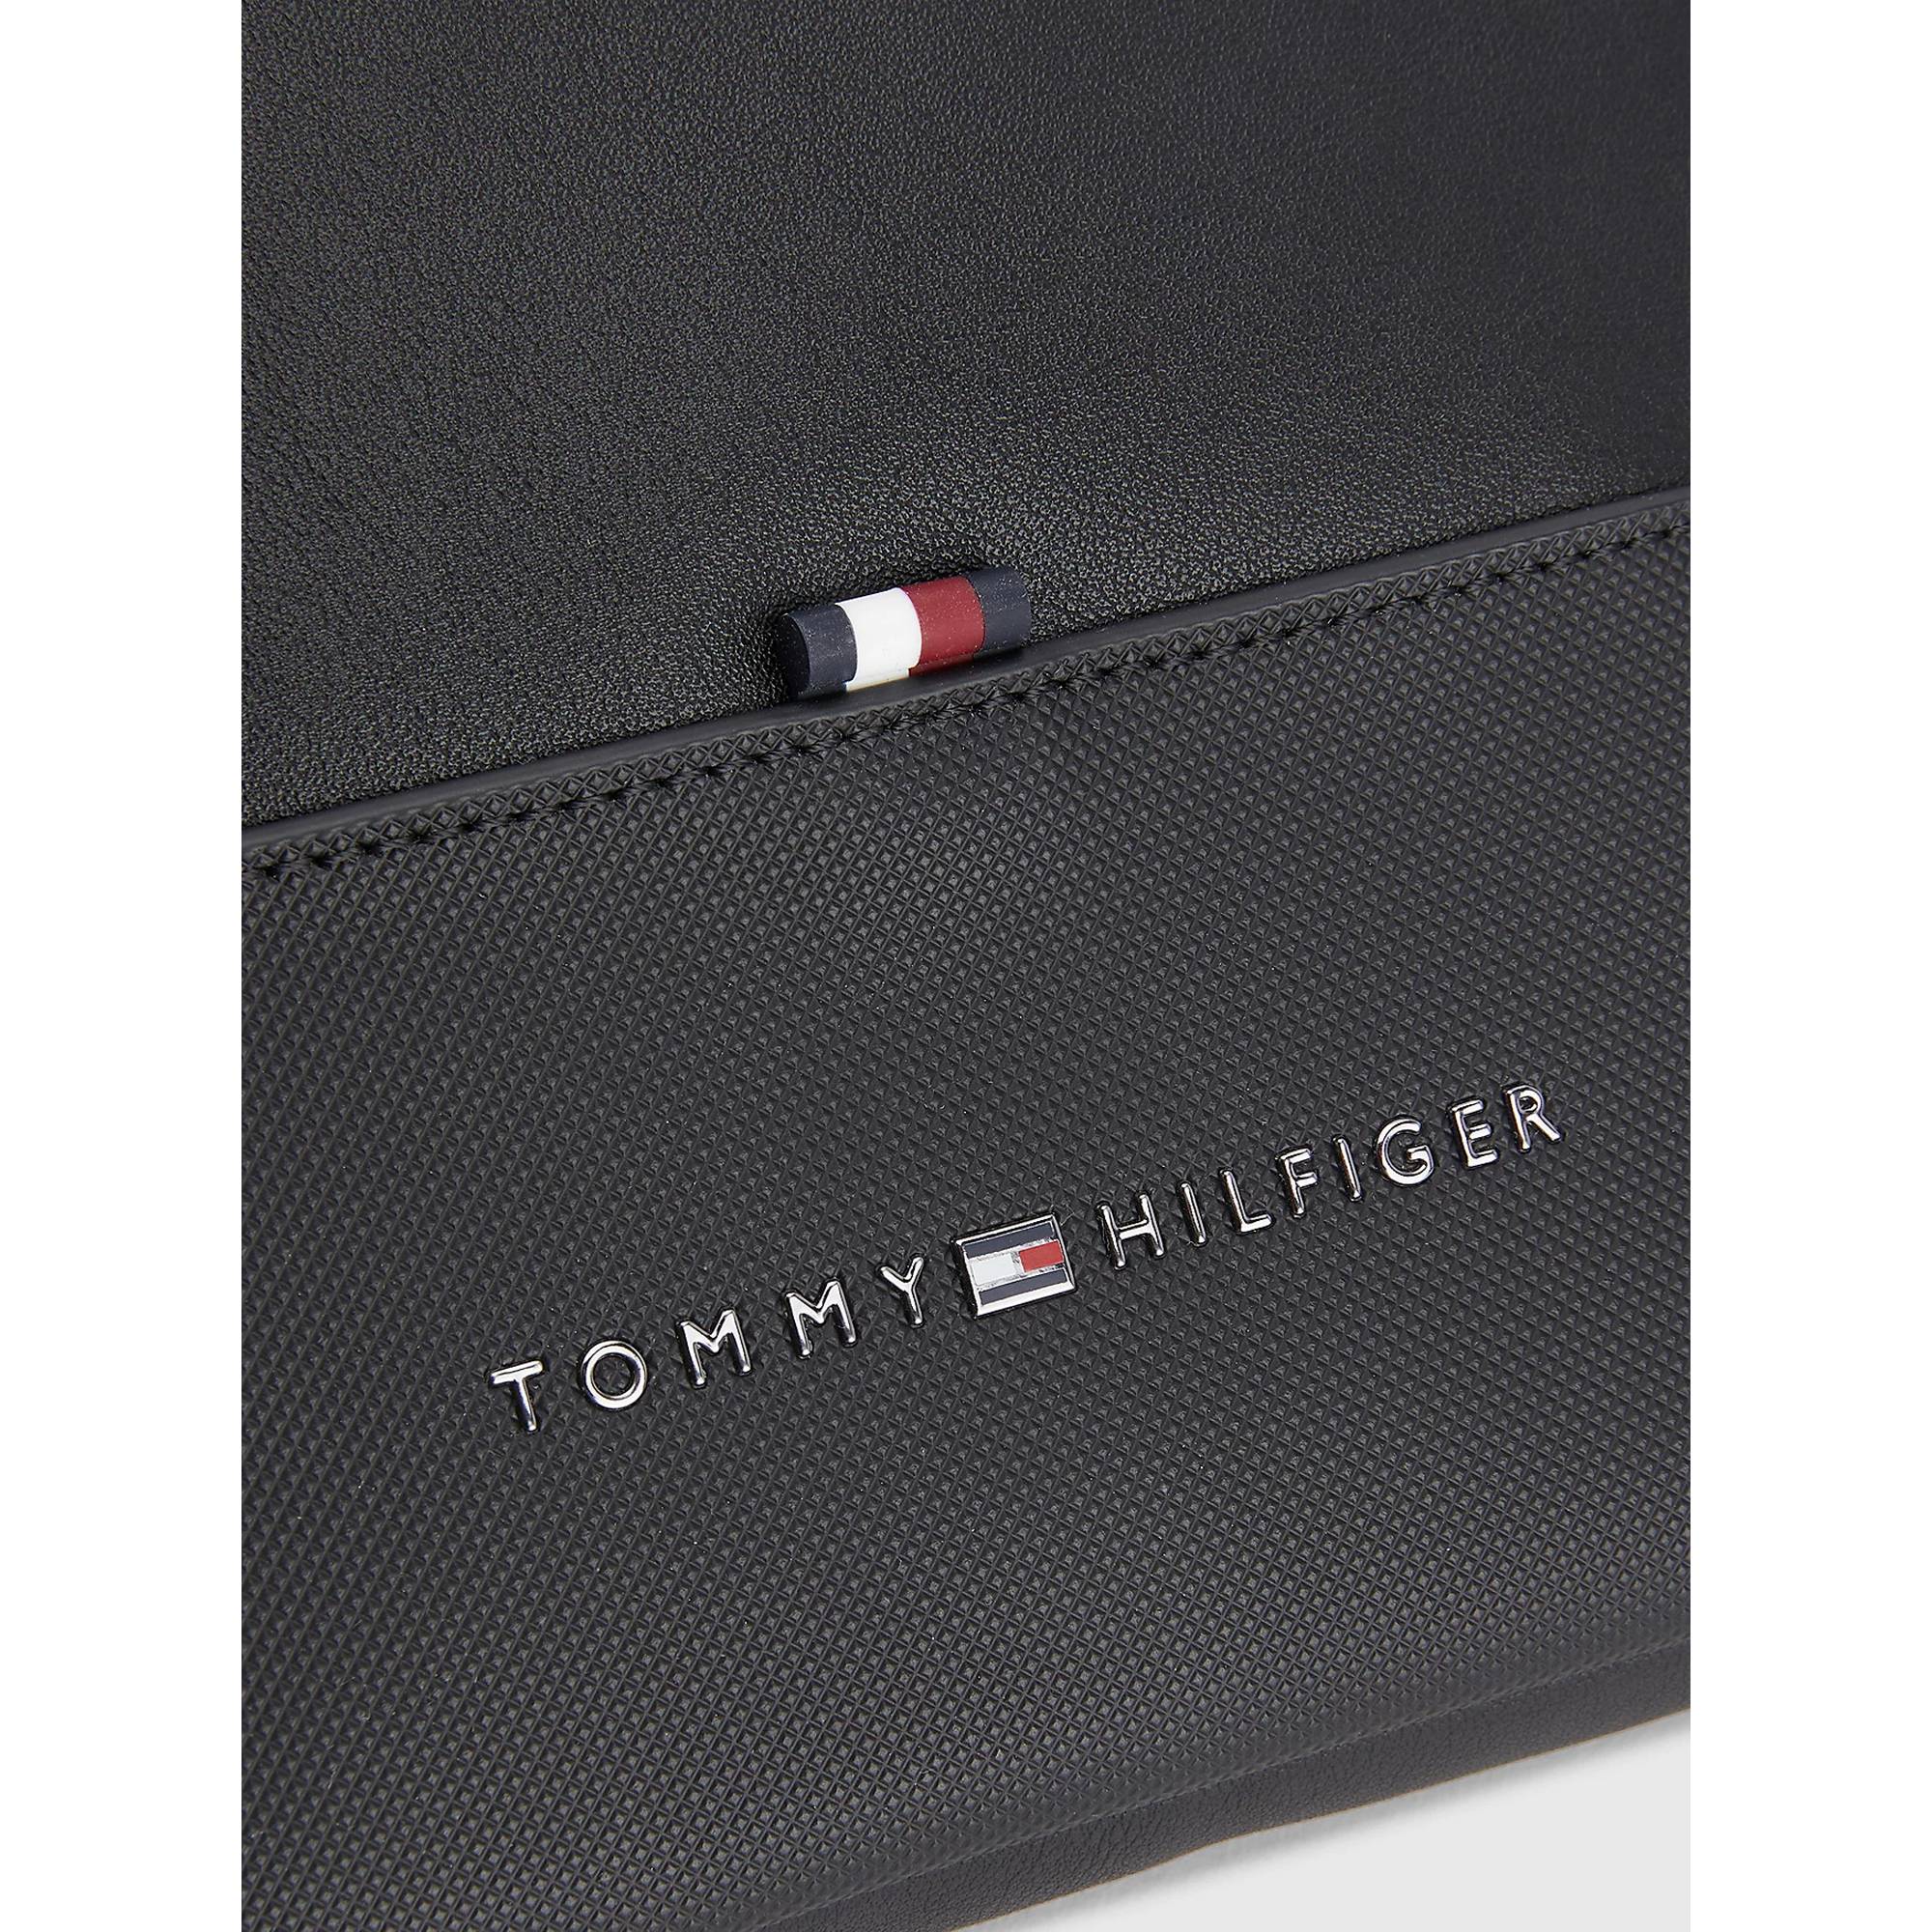 Sac bandoulière Tommy Hilfiger Essential à logo AM0AM10925 BDS couleur Noir vue de près